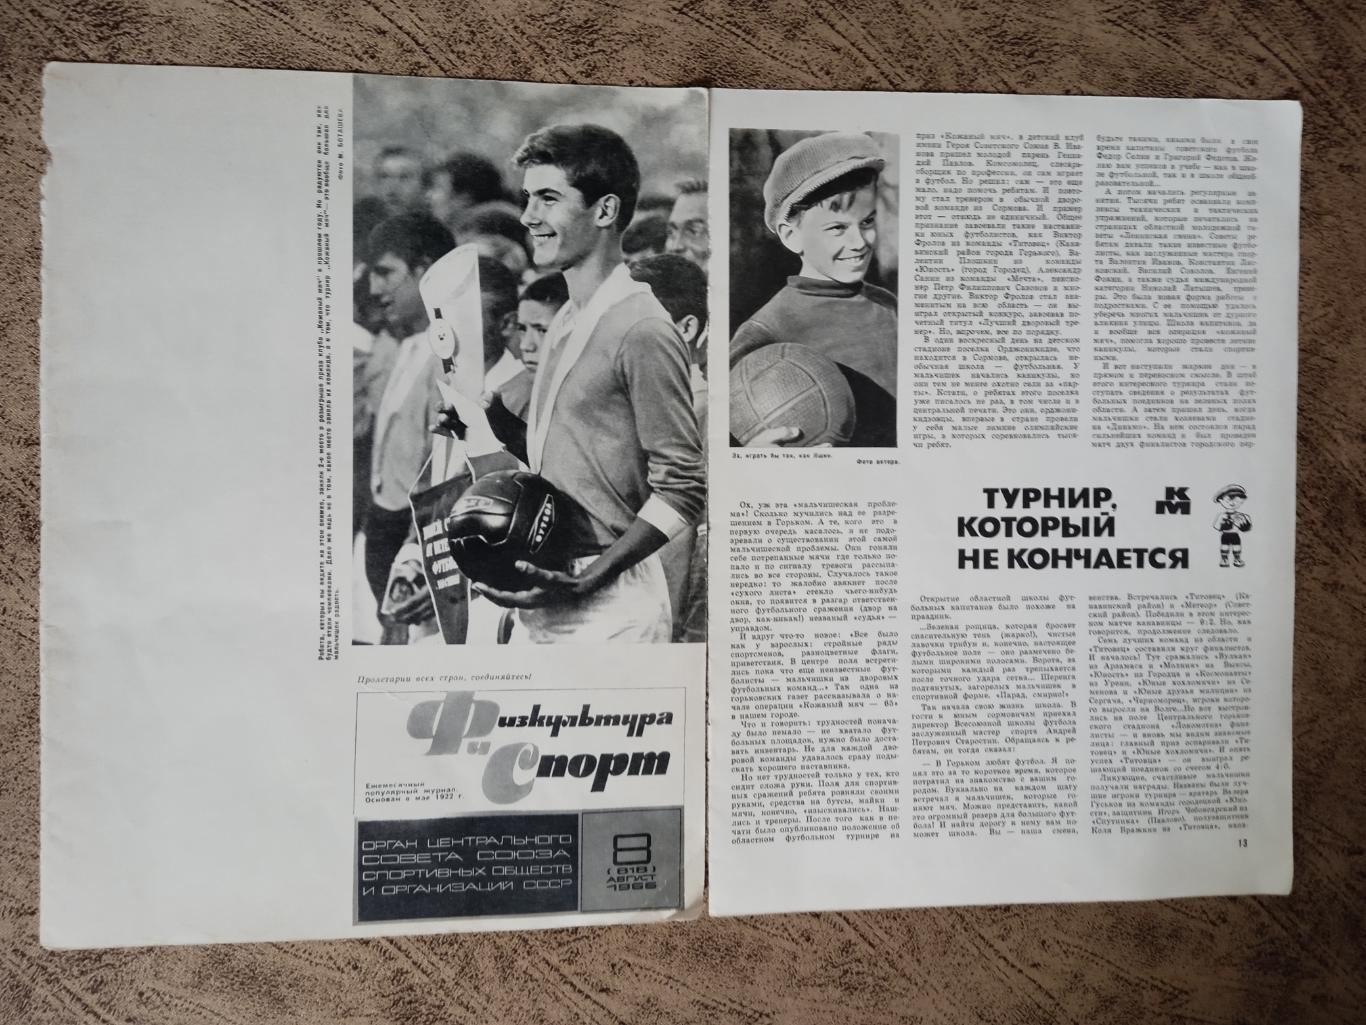 Статья.Футбол.Кожаный мяч 66.Журнал ФиС 1966 г.